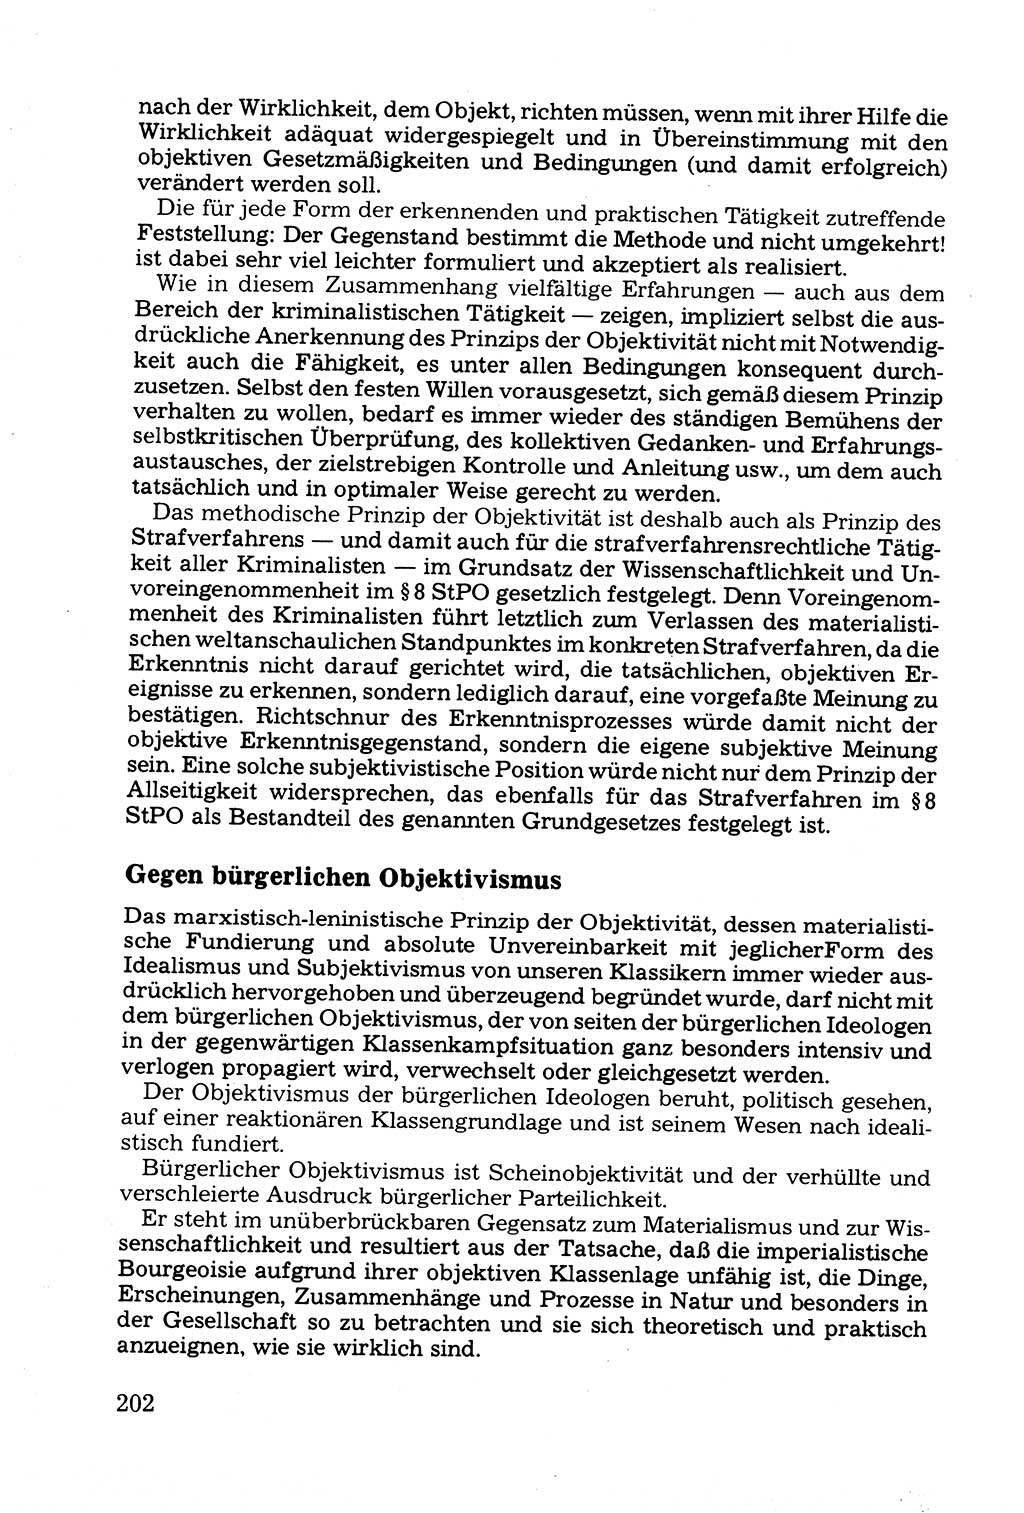 Grundfragen der Beweisführung im Ermittlungsverfahren [Deutsche Demokratische Republik (DDR)] 1980, Seite 202 (Bws.-Fhrg. EV DDR 1980, S. 202)